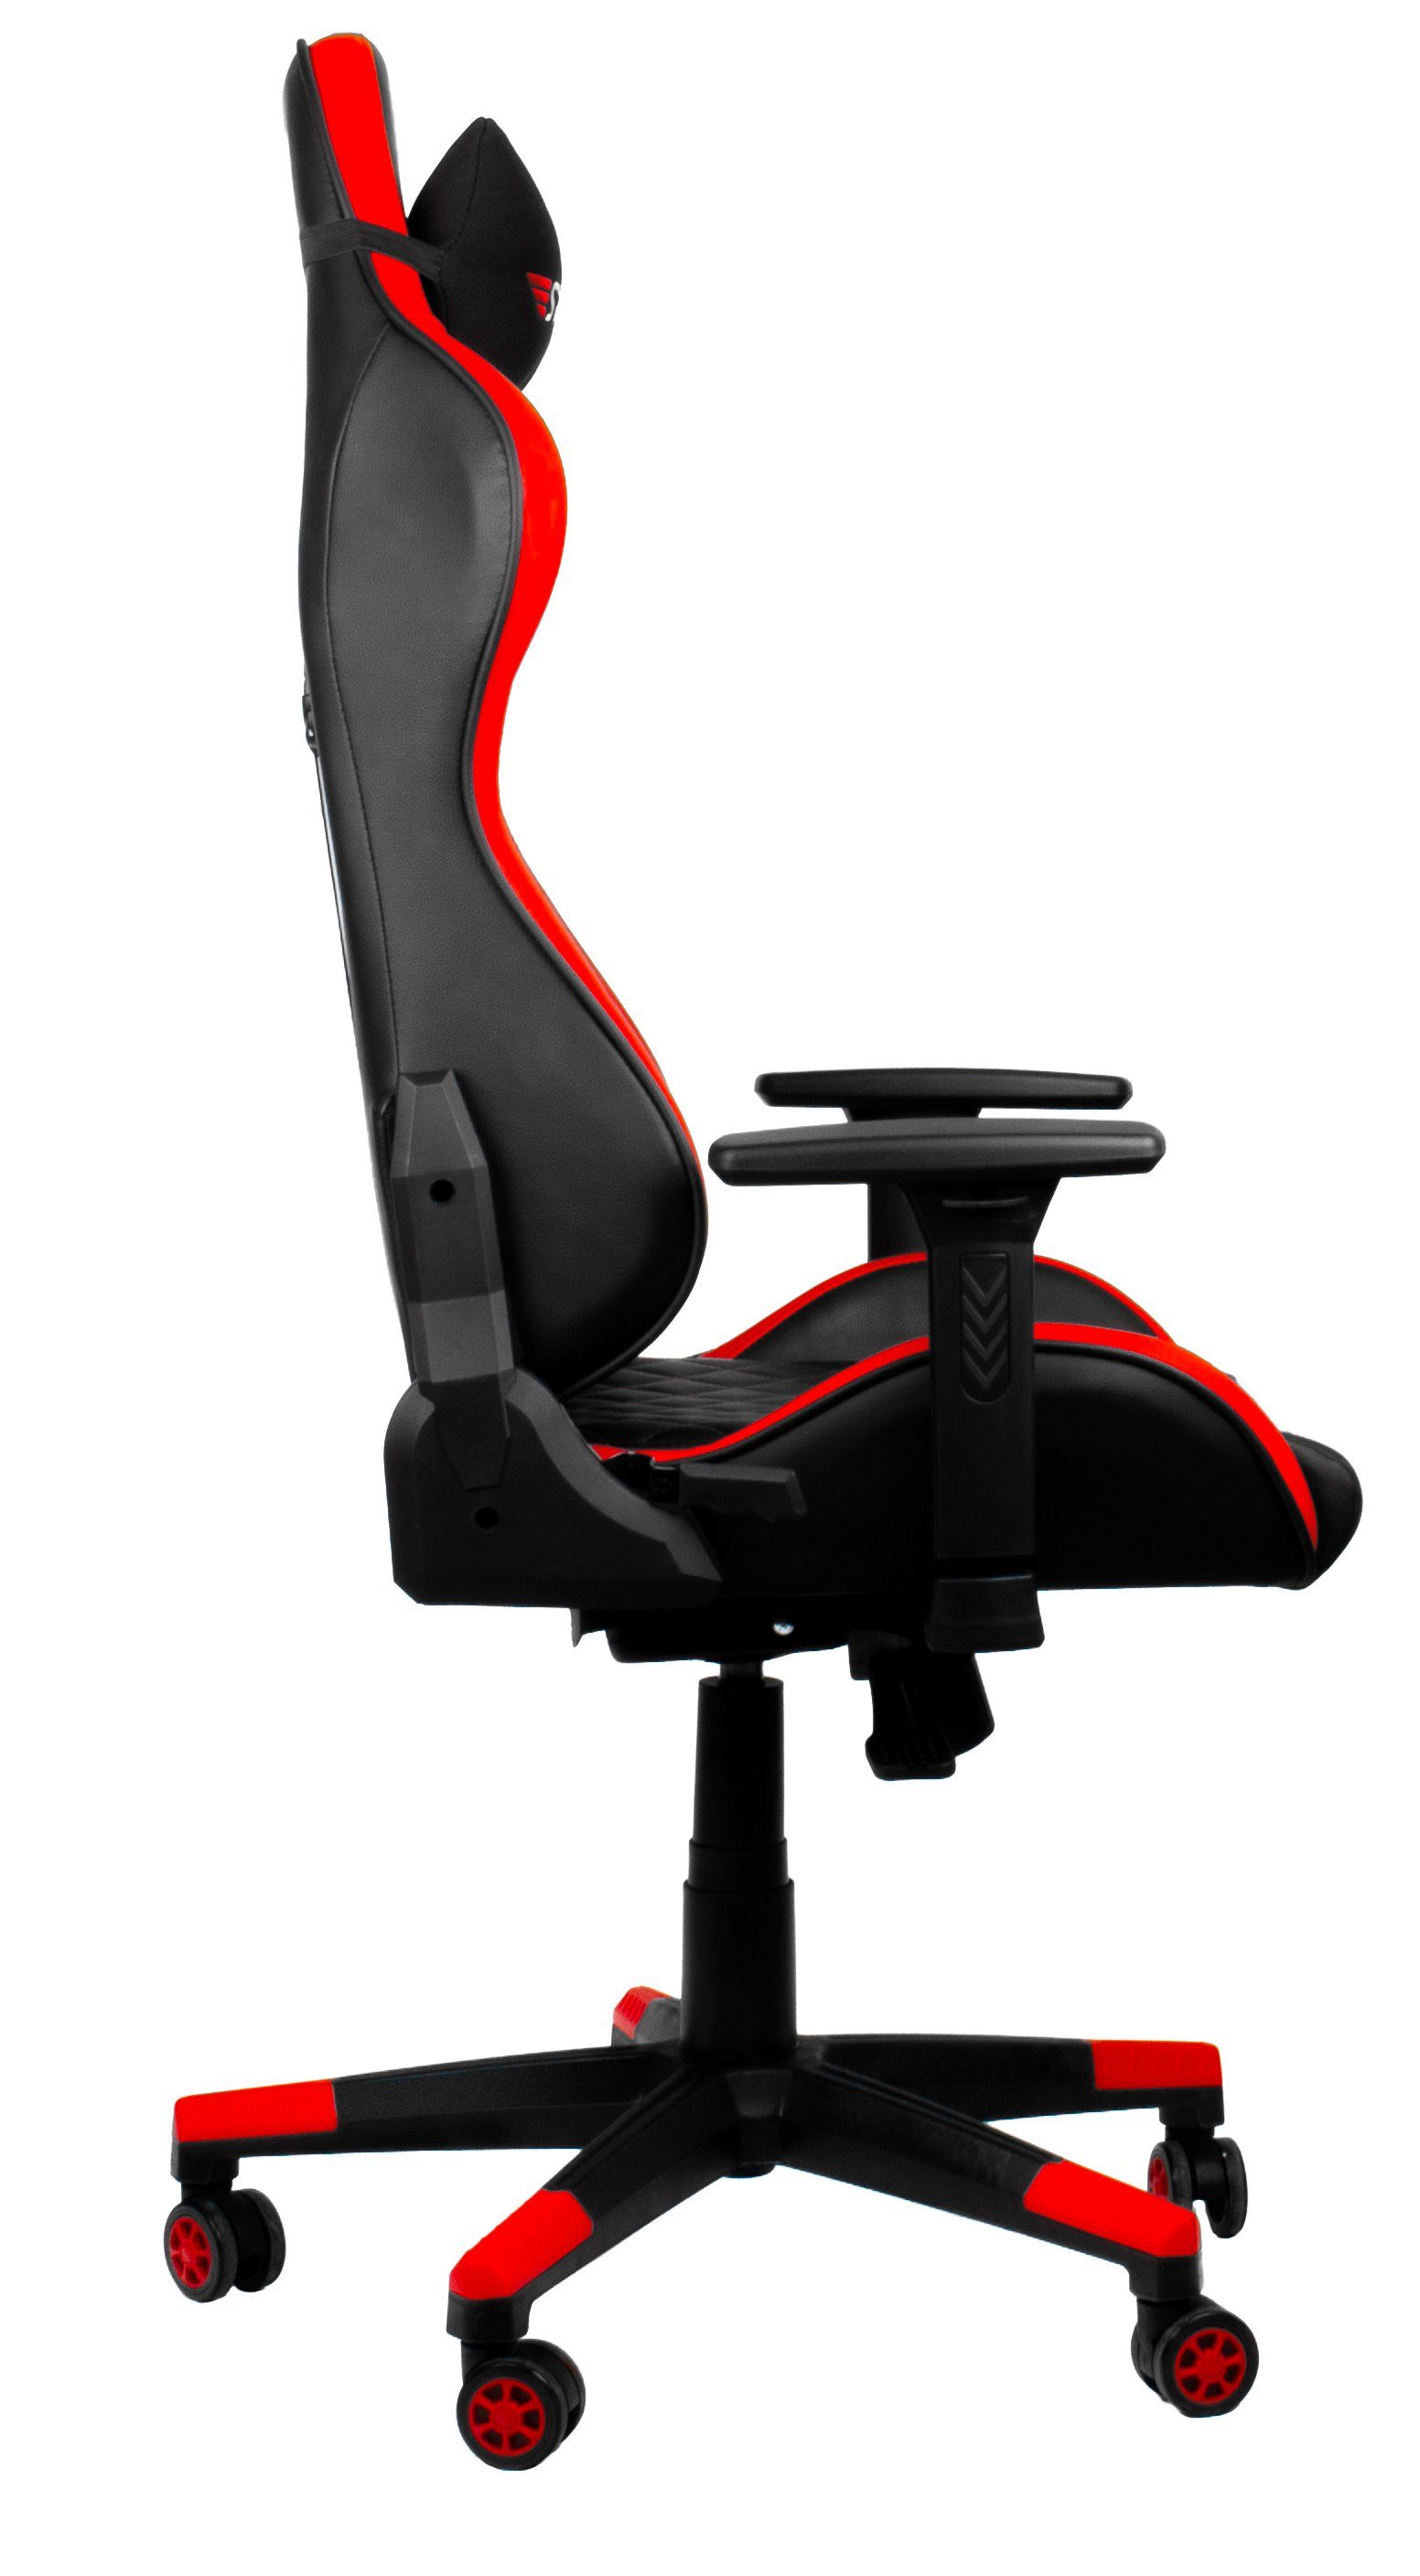 Hyrican Gaming-Stuhl "Striker Code XL" Gamingstuhl,Schreibtischstuhl ergonomischer Red